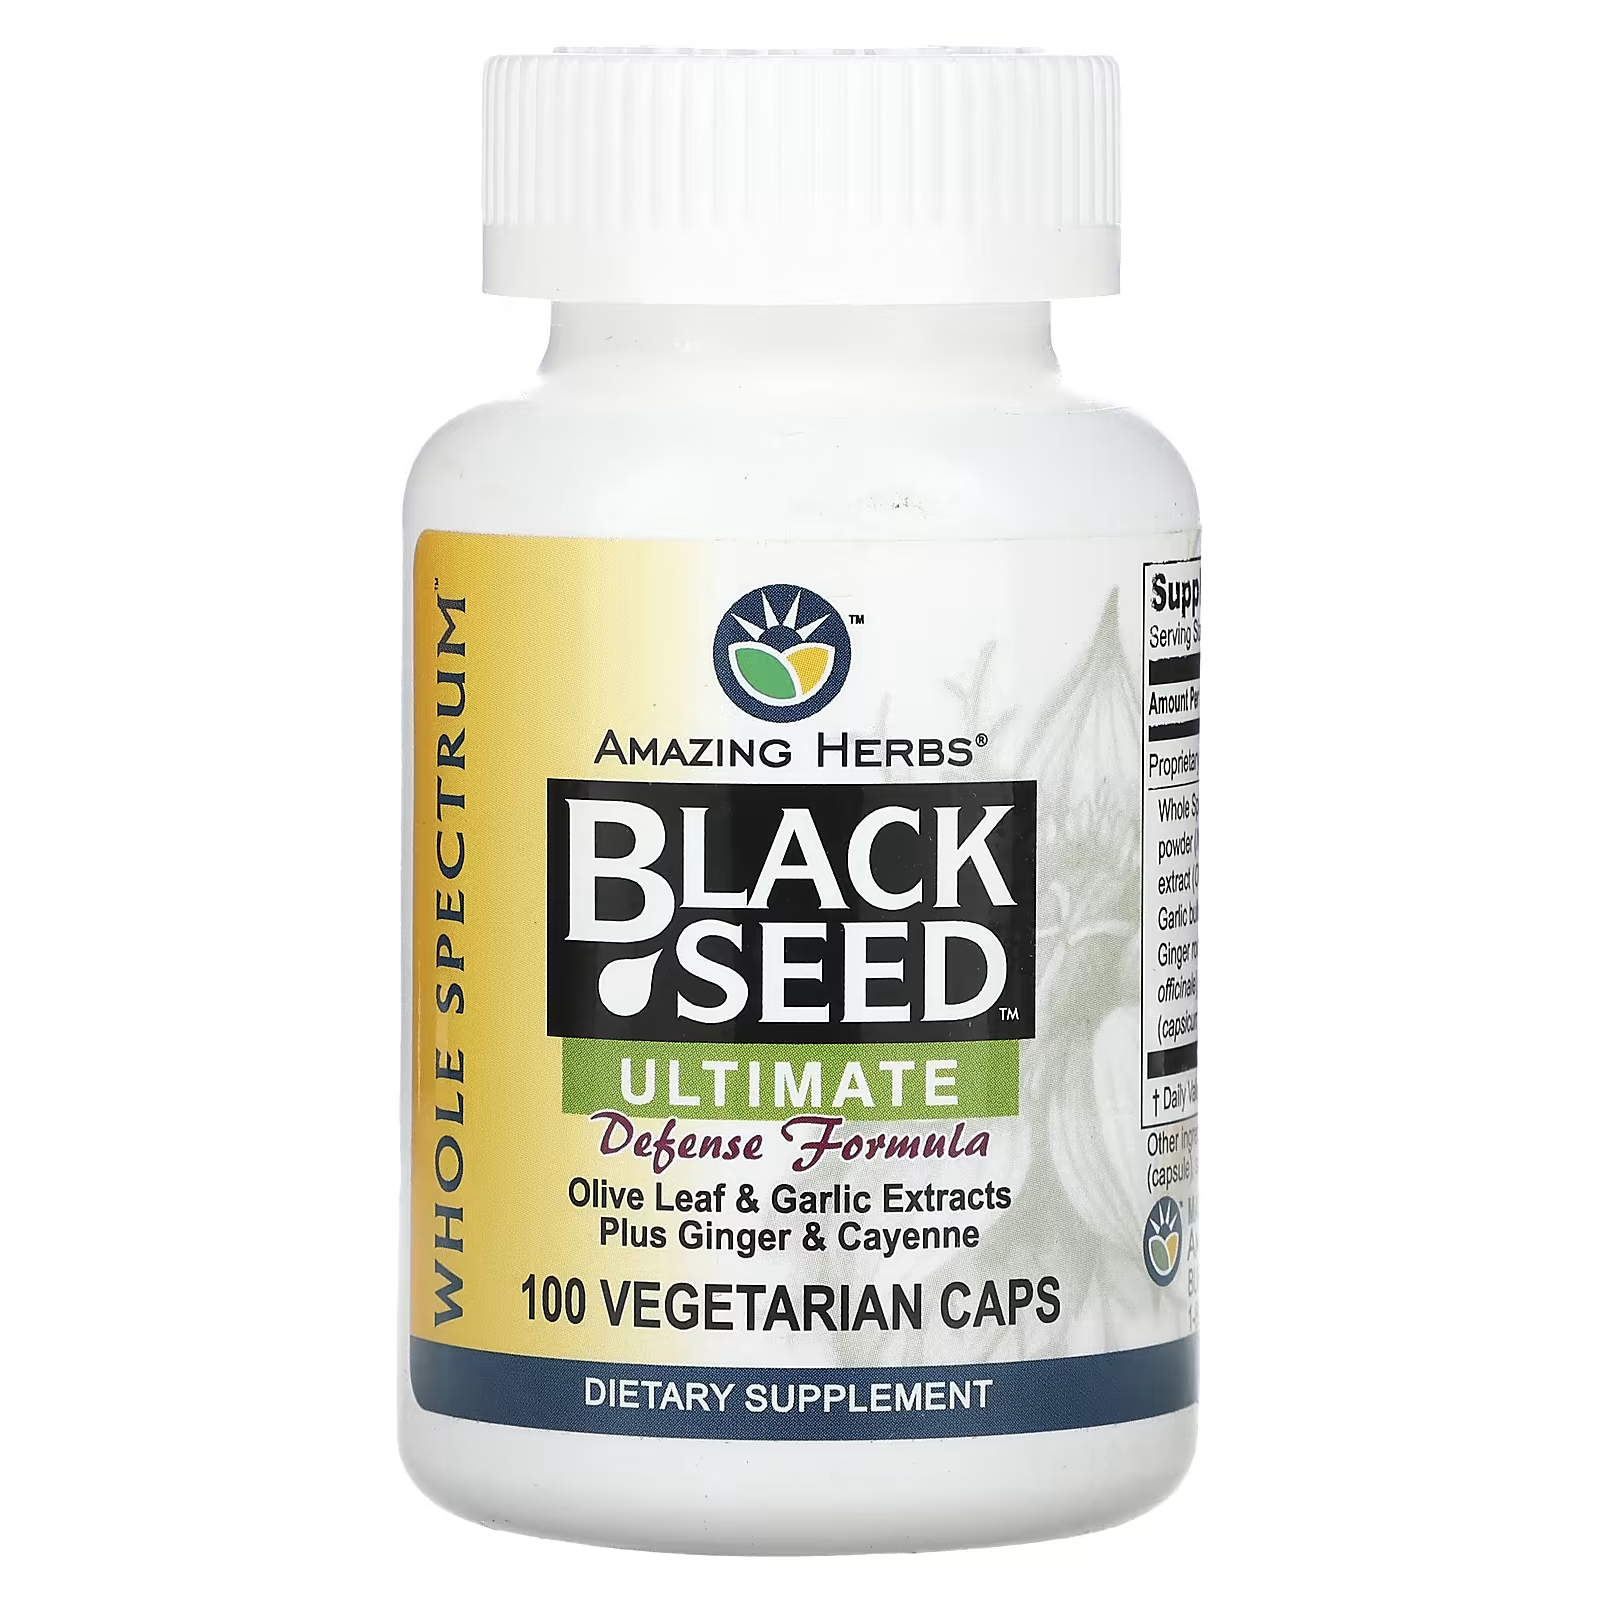 Пищевая добавка Amazing Herbs Black Seed Ultimate Defense Formula, 100 капсул комплекс оливковых листьев barlean s